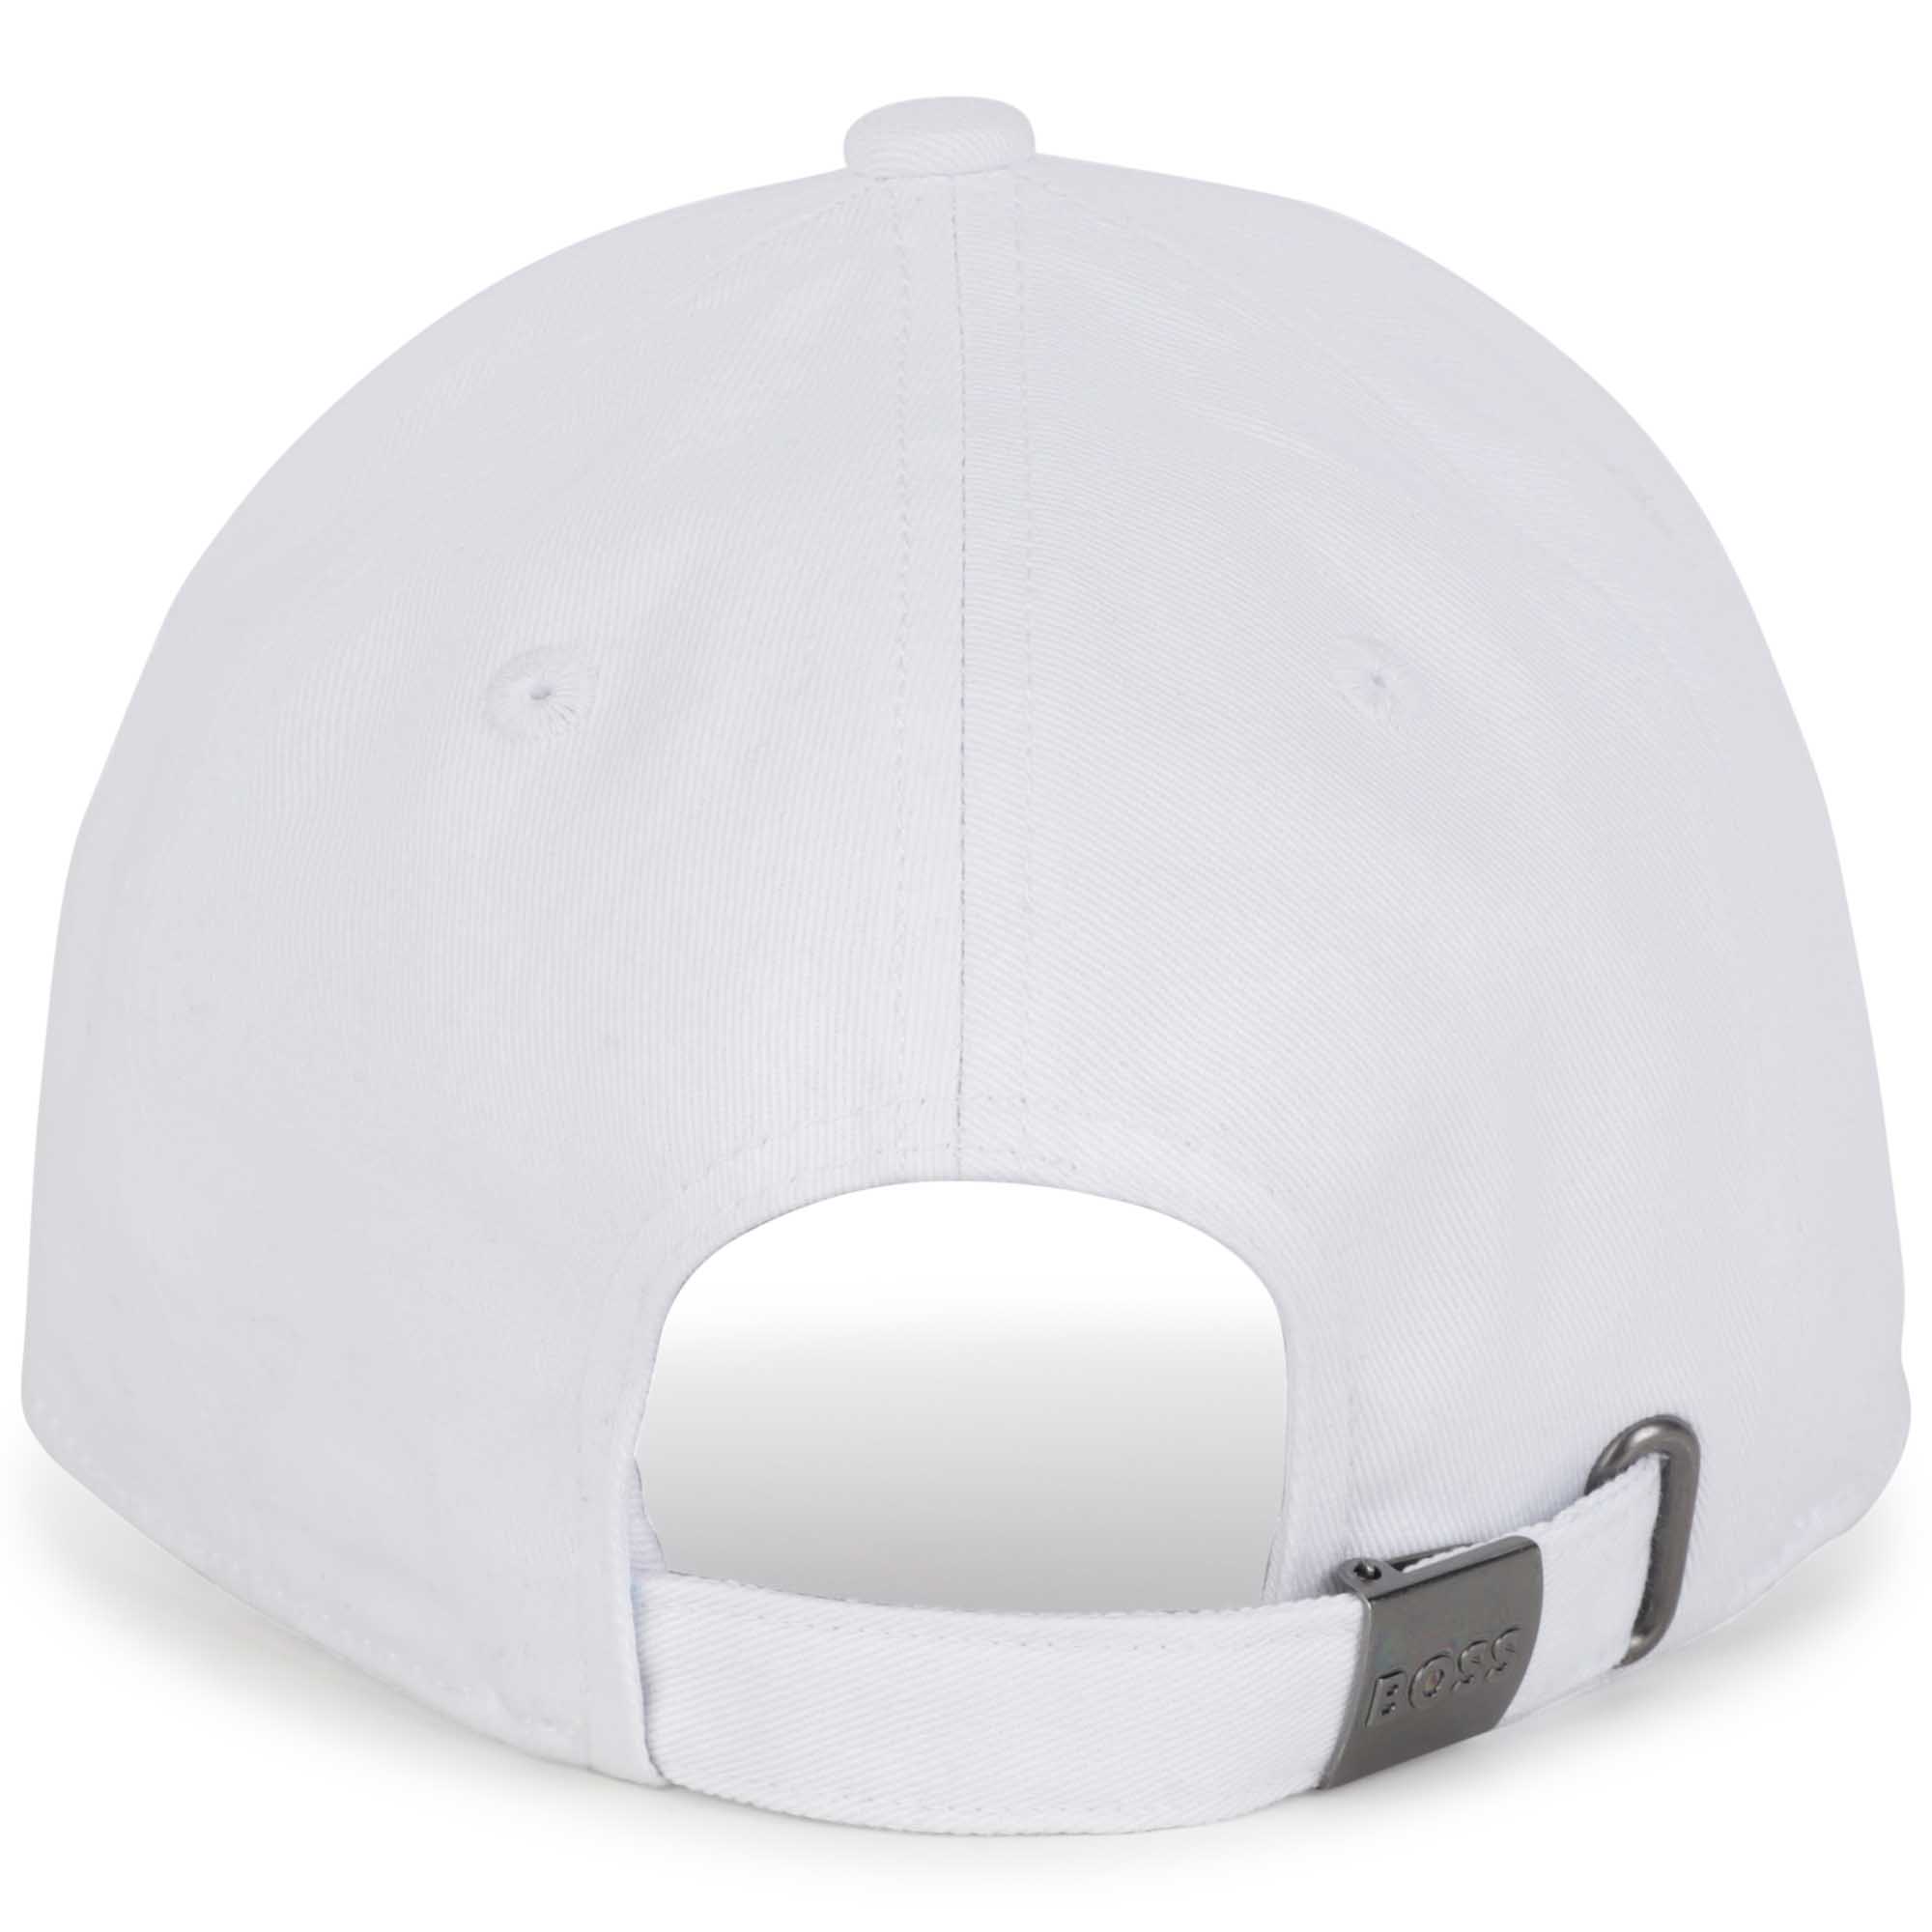 Cotton baseball cap BOSS for GIRL